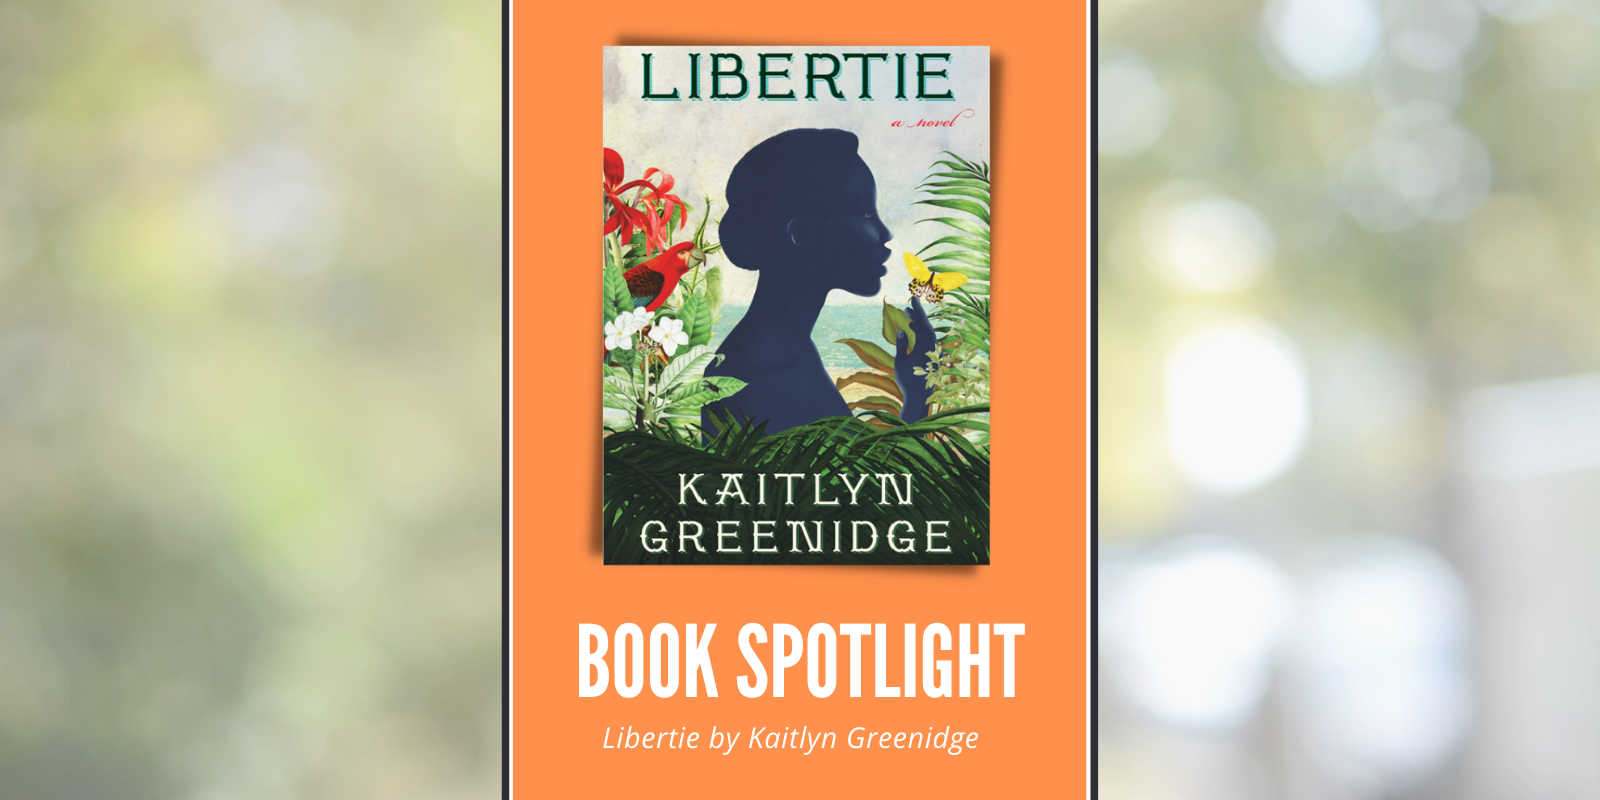 libertie a novel by kaitlyn greenidge